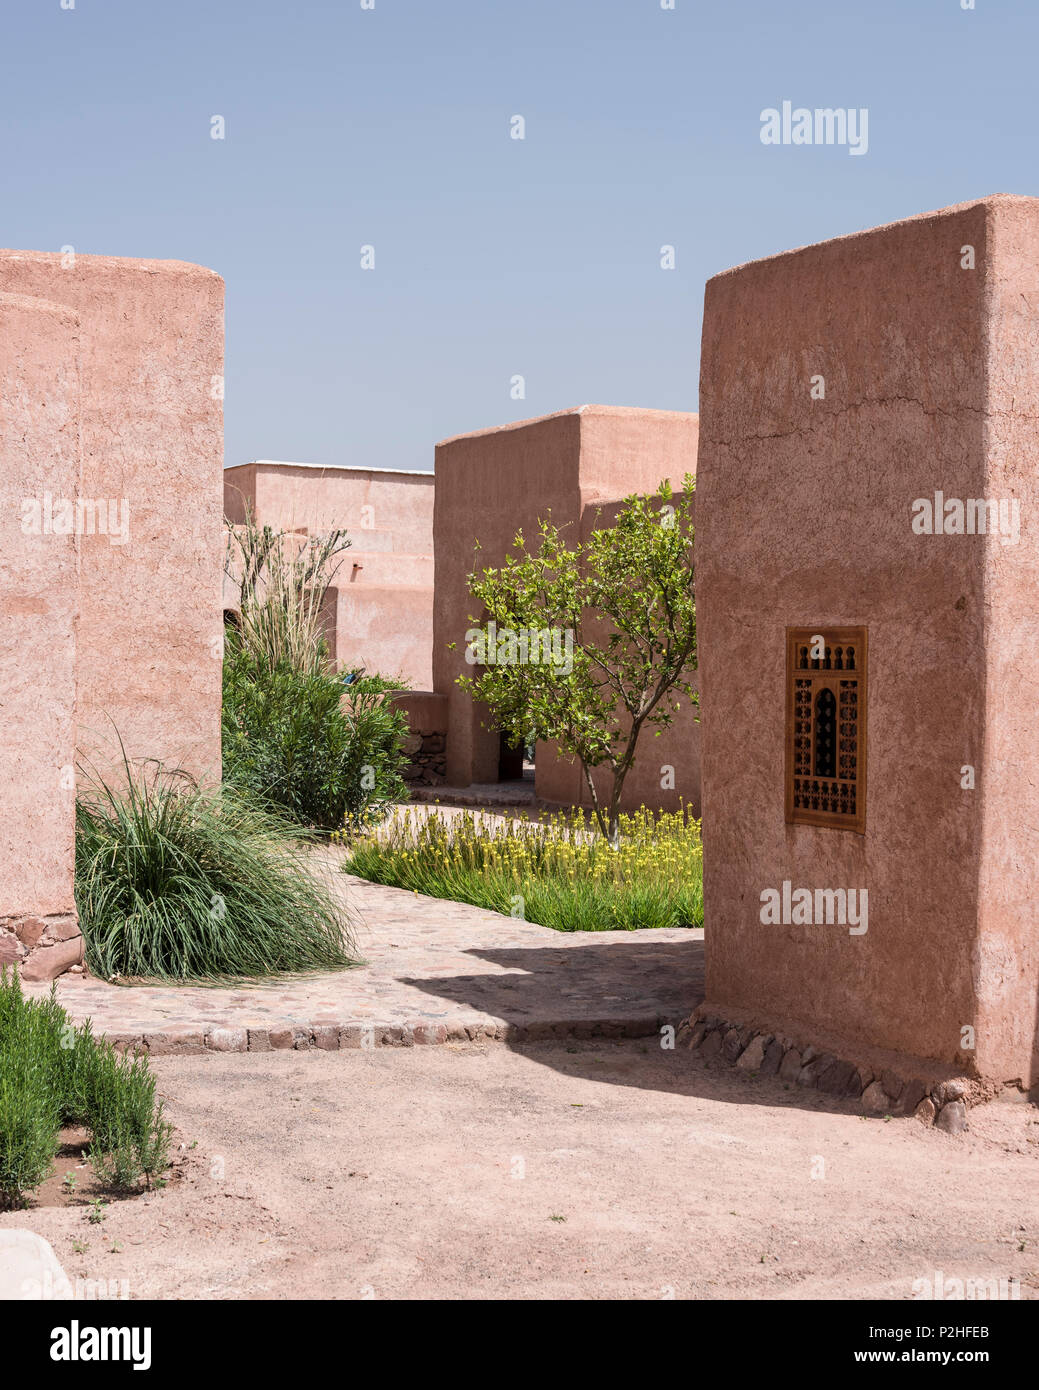 Fachada exterior de adobe de estilo bereber lodges con patio de limoneros, bambú y plantas silvestres marroquí Foto de stock